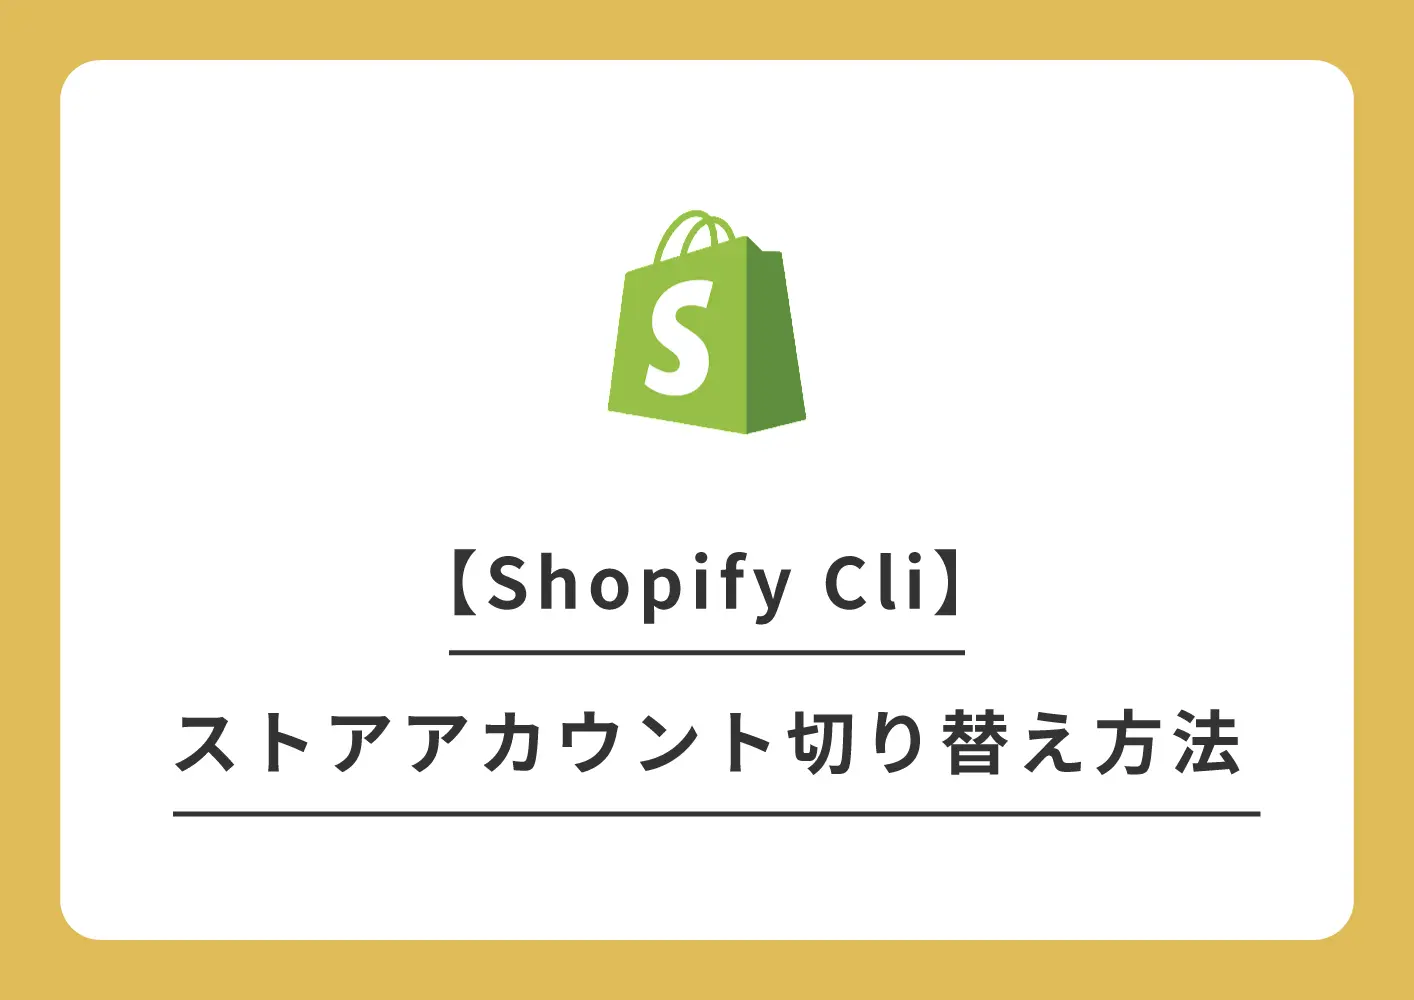 Shopify Cli、ストアアカウントの切り替え方法